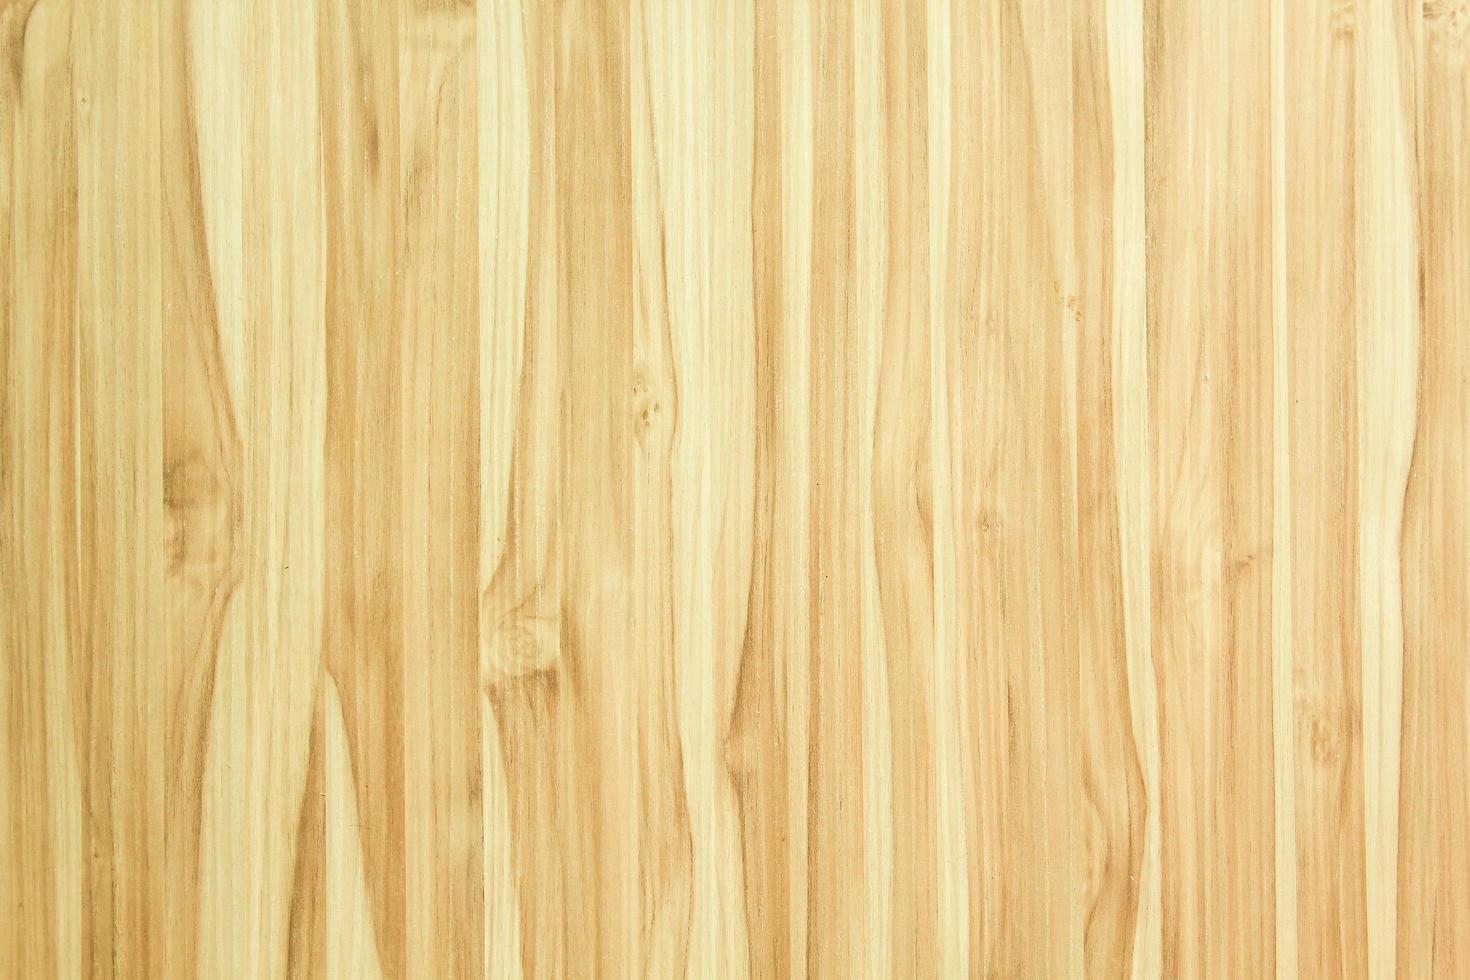 textura perfeita de madeira carvalho antigo ou textura de madeira moderna foto